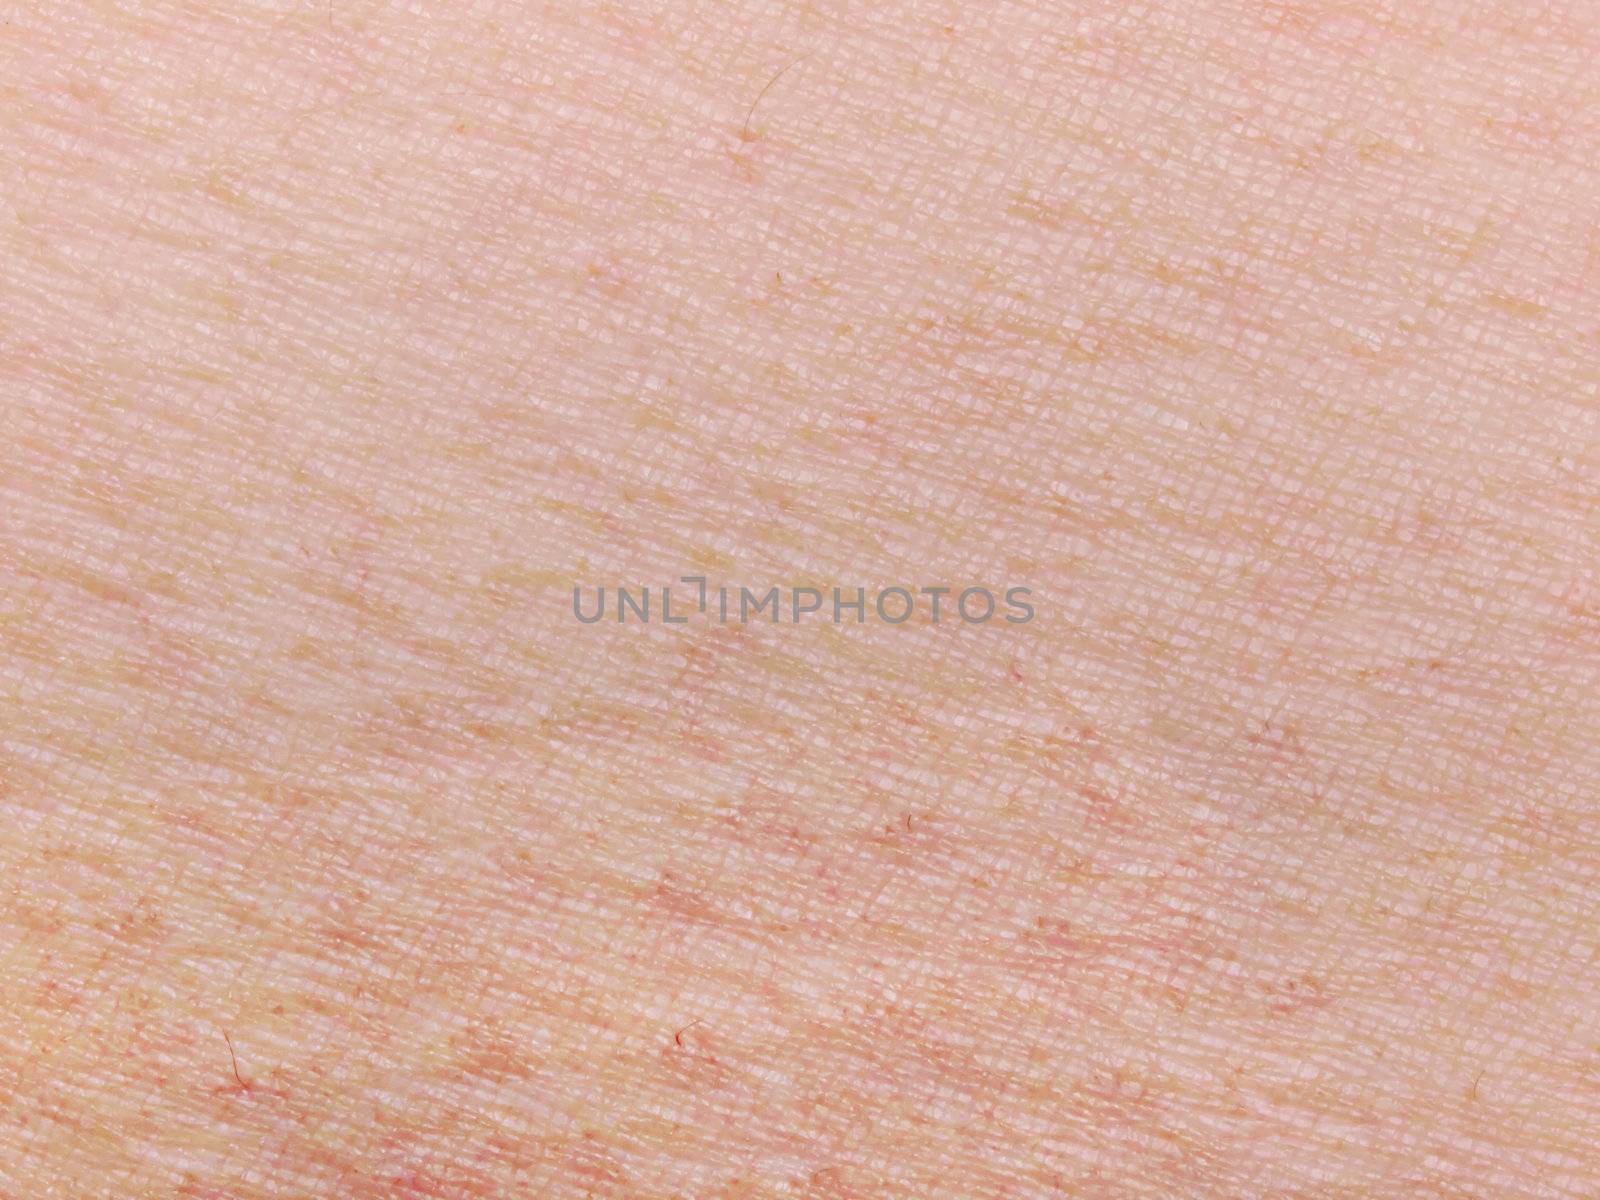 human skin by zkruger